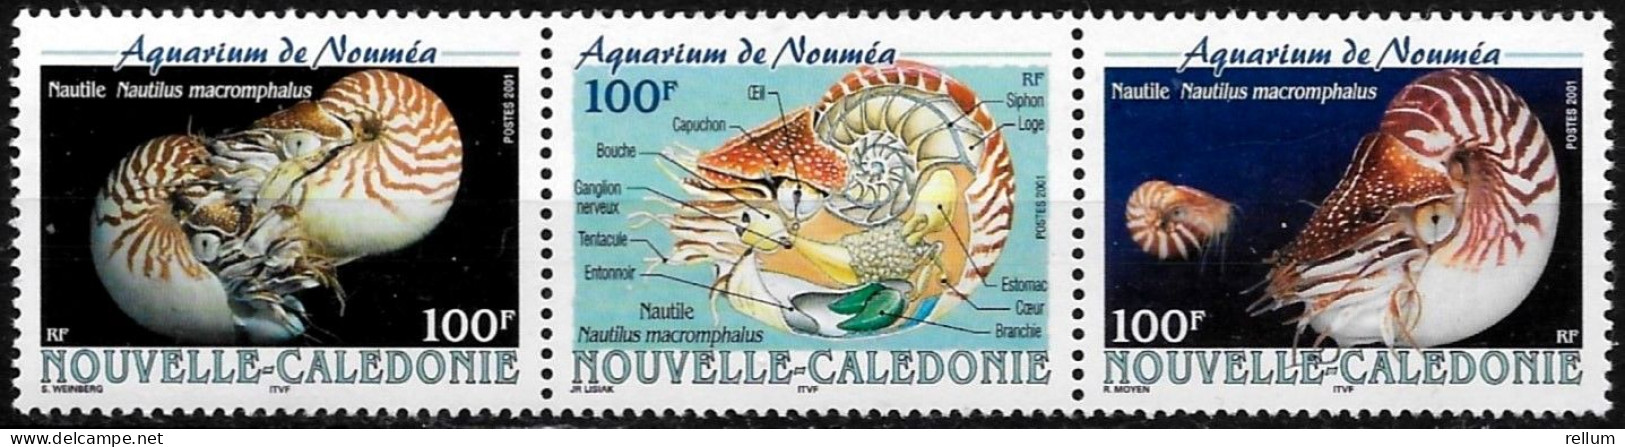 Nouvelle Calédonie 2001 - Yvert Et Tellier Nr. 840/842 Se Tenant - Michel Nr. 1234/1236 Zusammenhängend ** - Ungebraucht